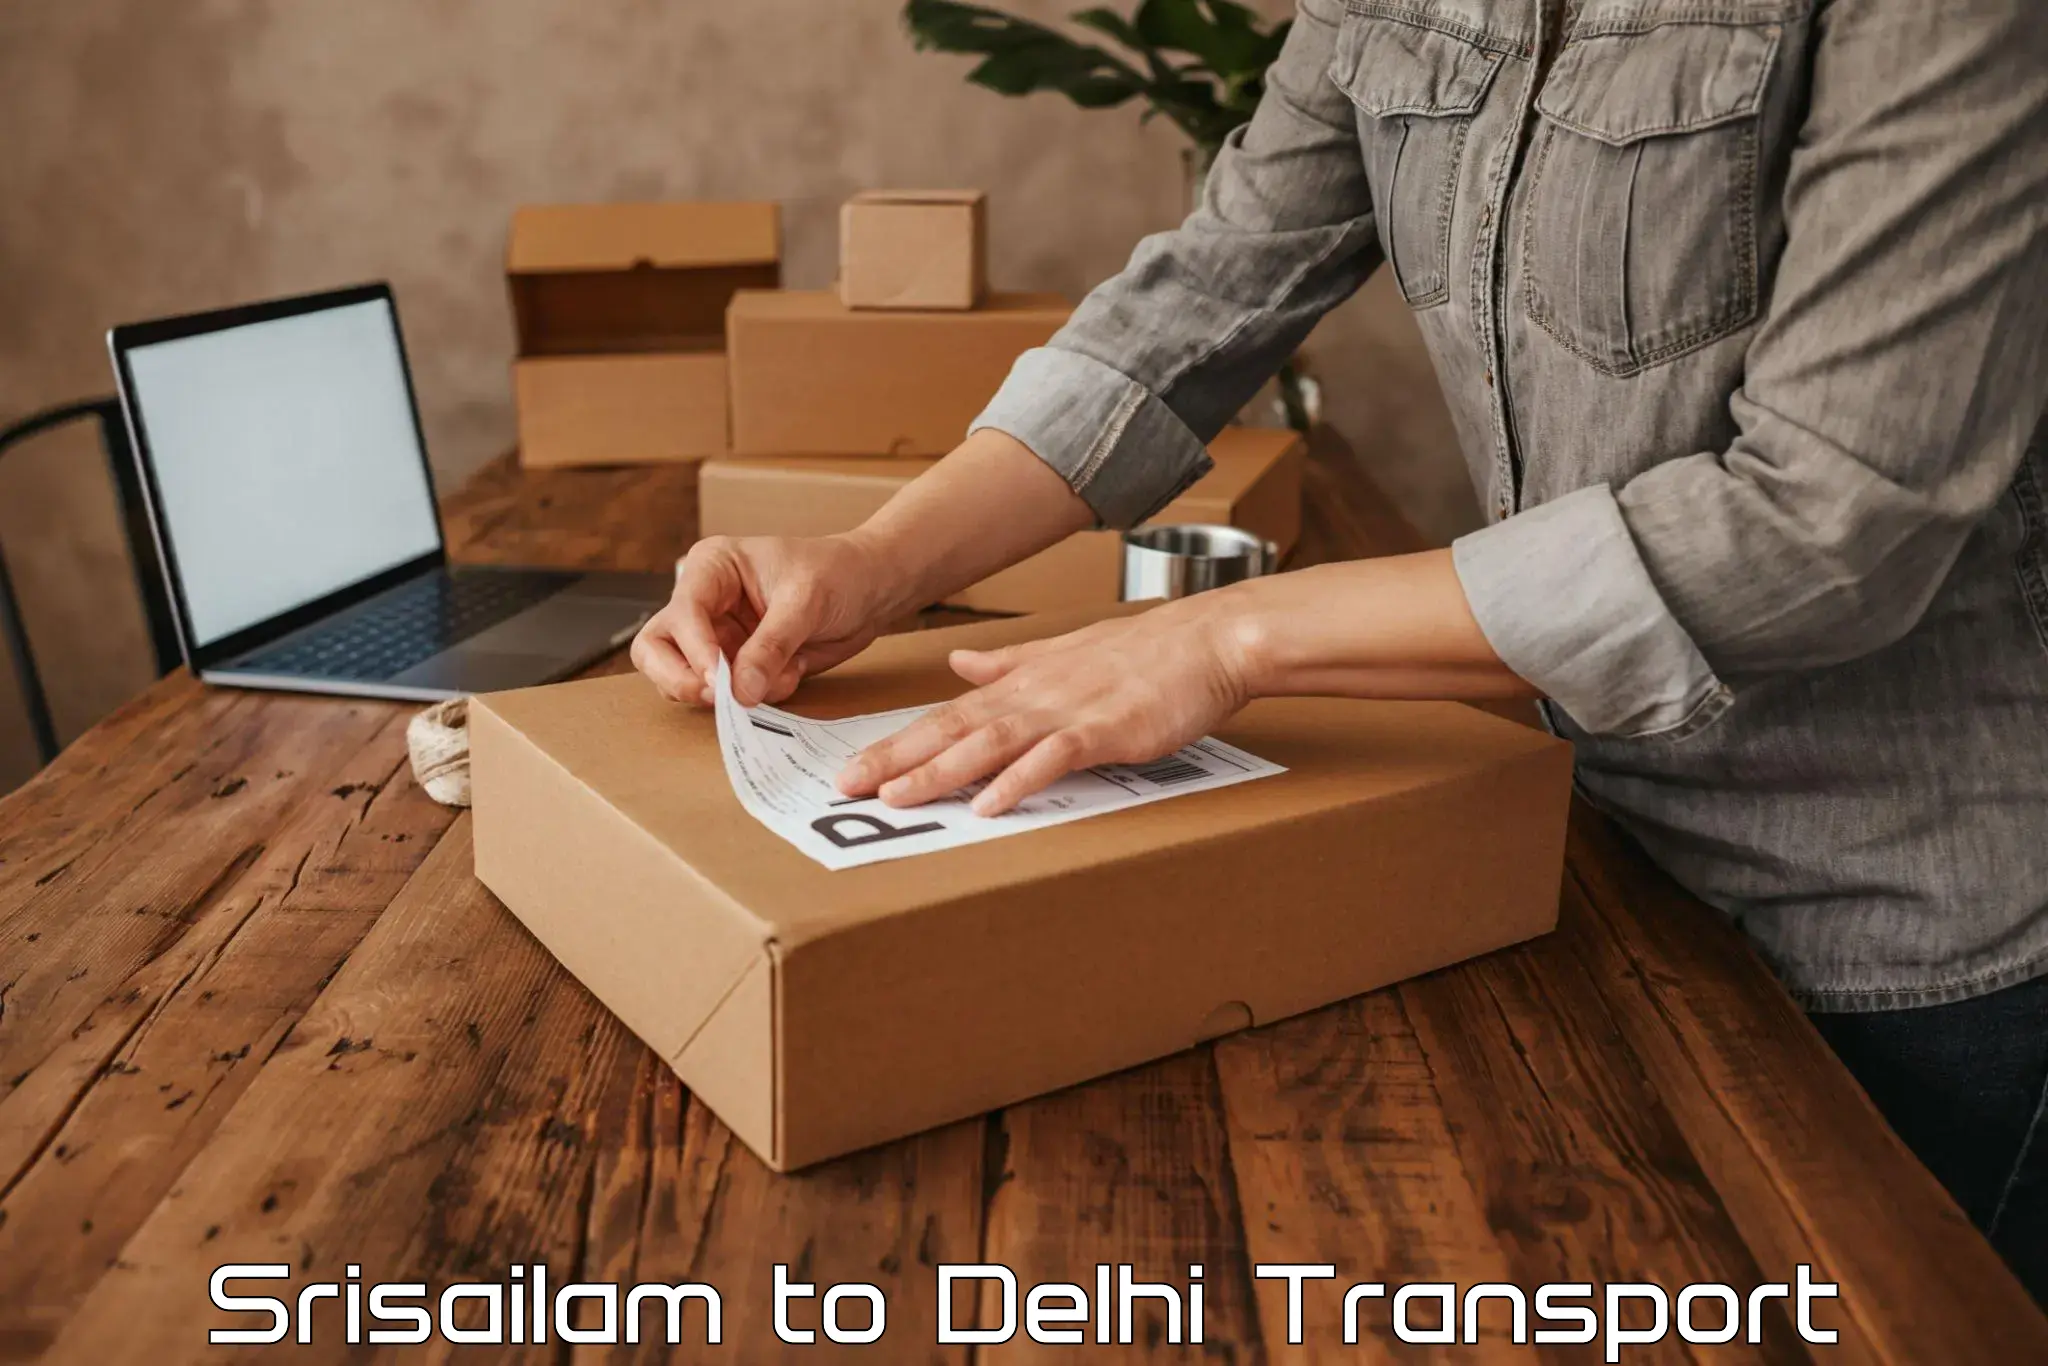 Furniture transport service Srisailam to Delhi Technological University DTU